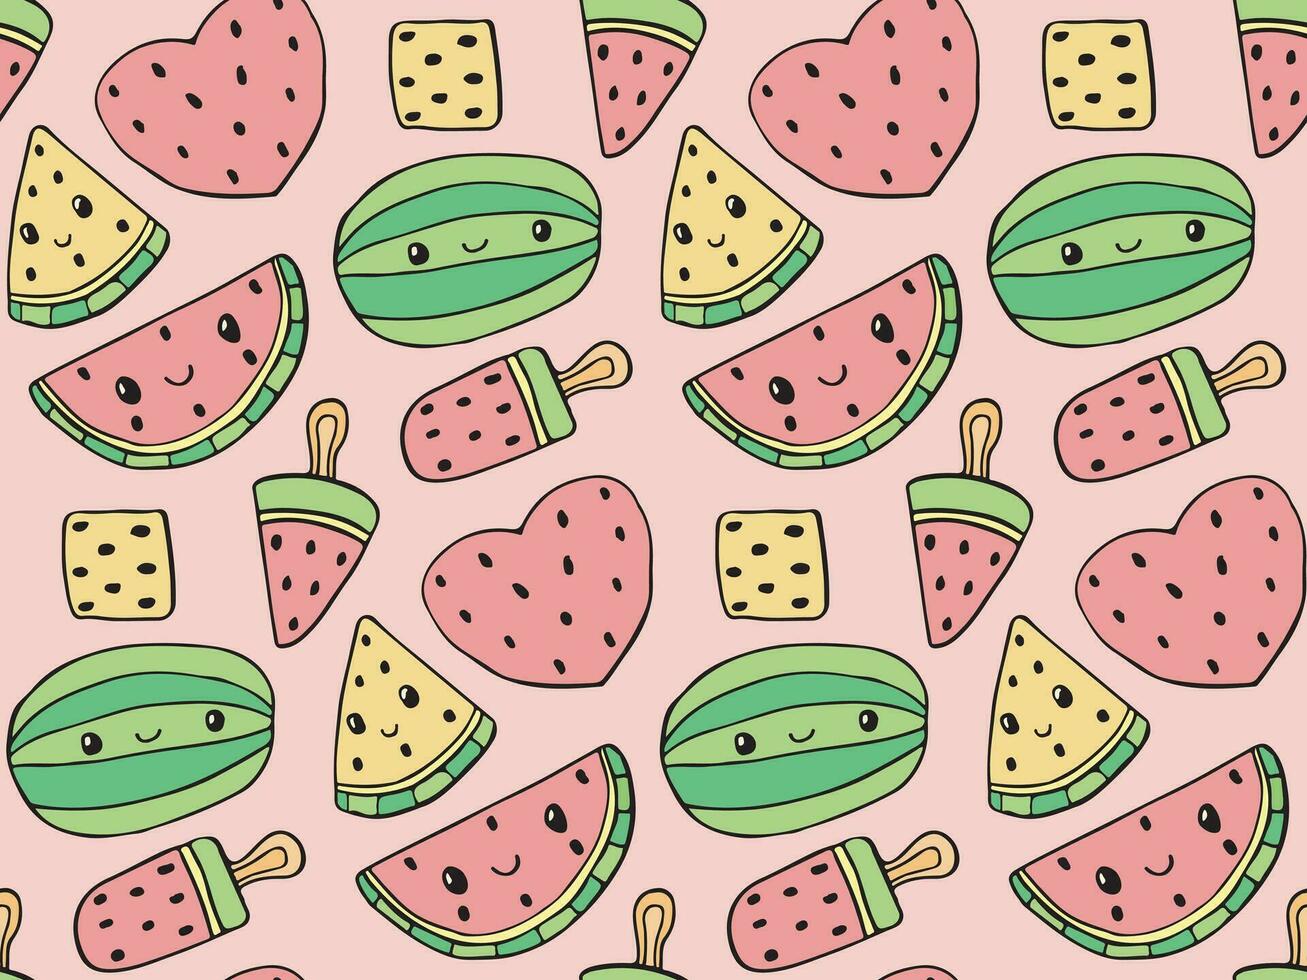 süß Vektor Wassermelone Tag Textur, nahtlos Sommer- tropisch Obst Muster, saftig Verpackung und Scrapbooking Papier, Wassermelone Scheibe und Eis Sahne Stoff